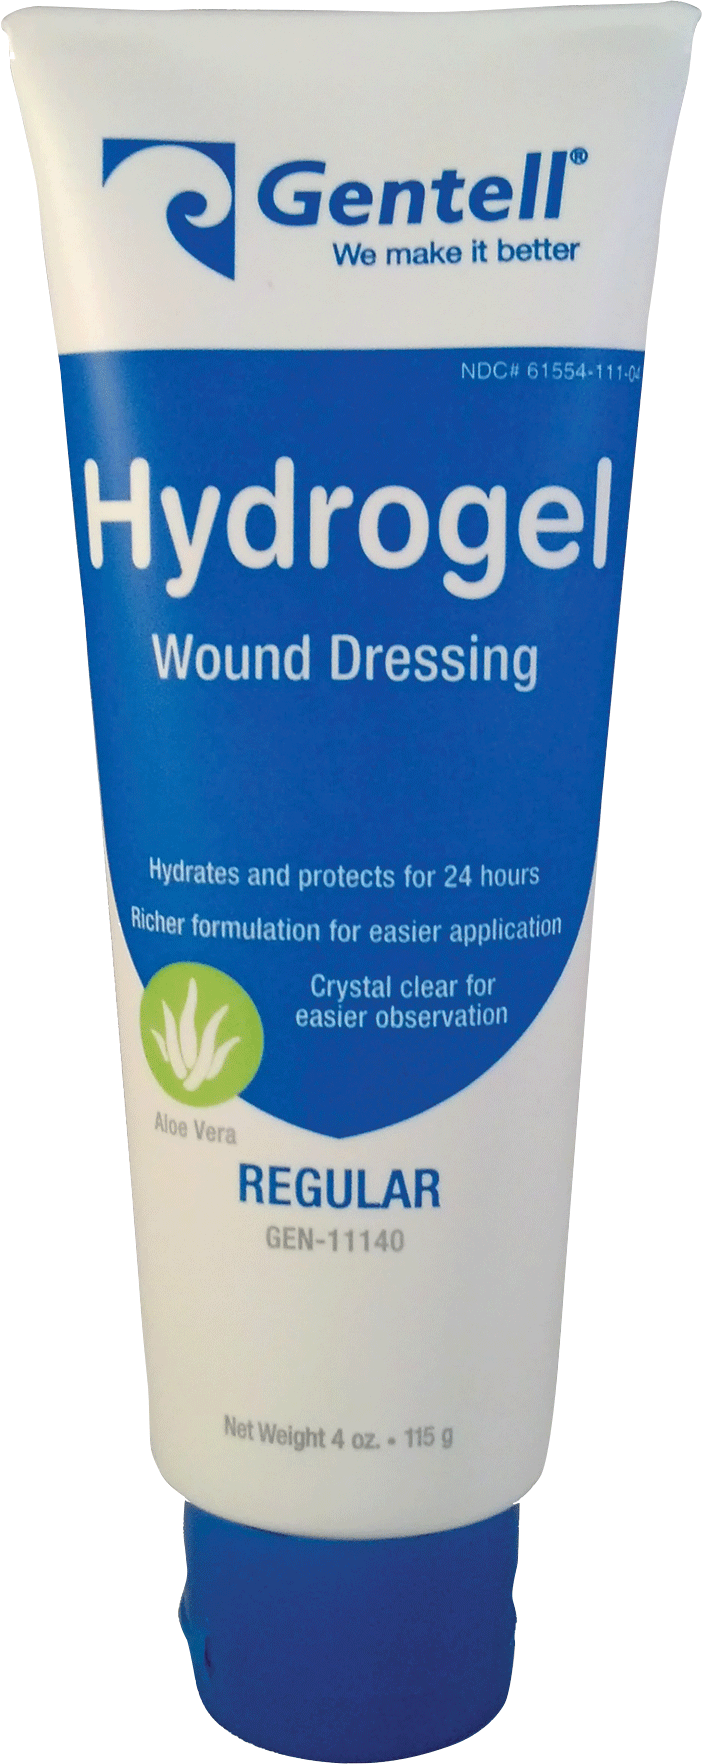 hydrogel wound dressing